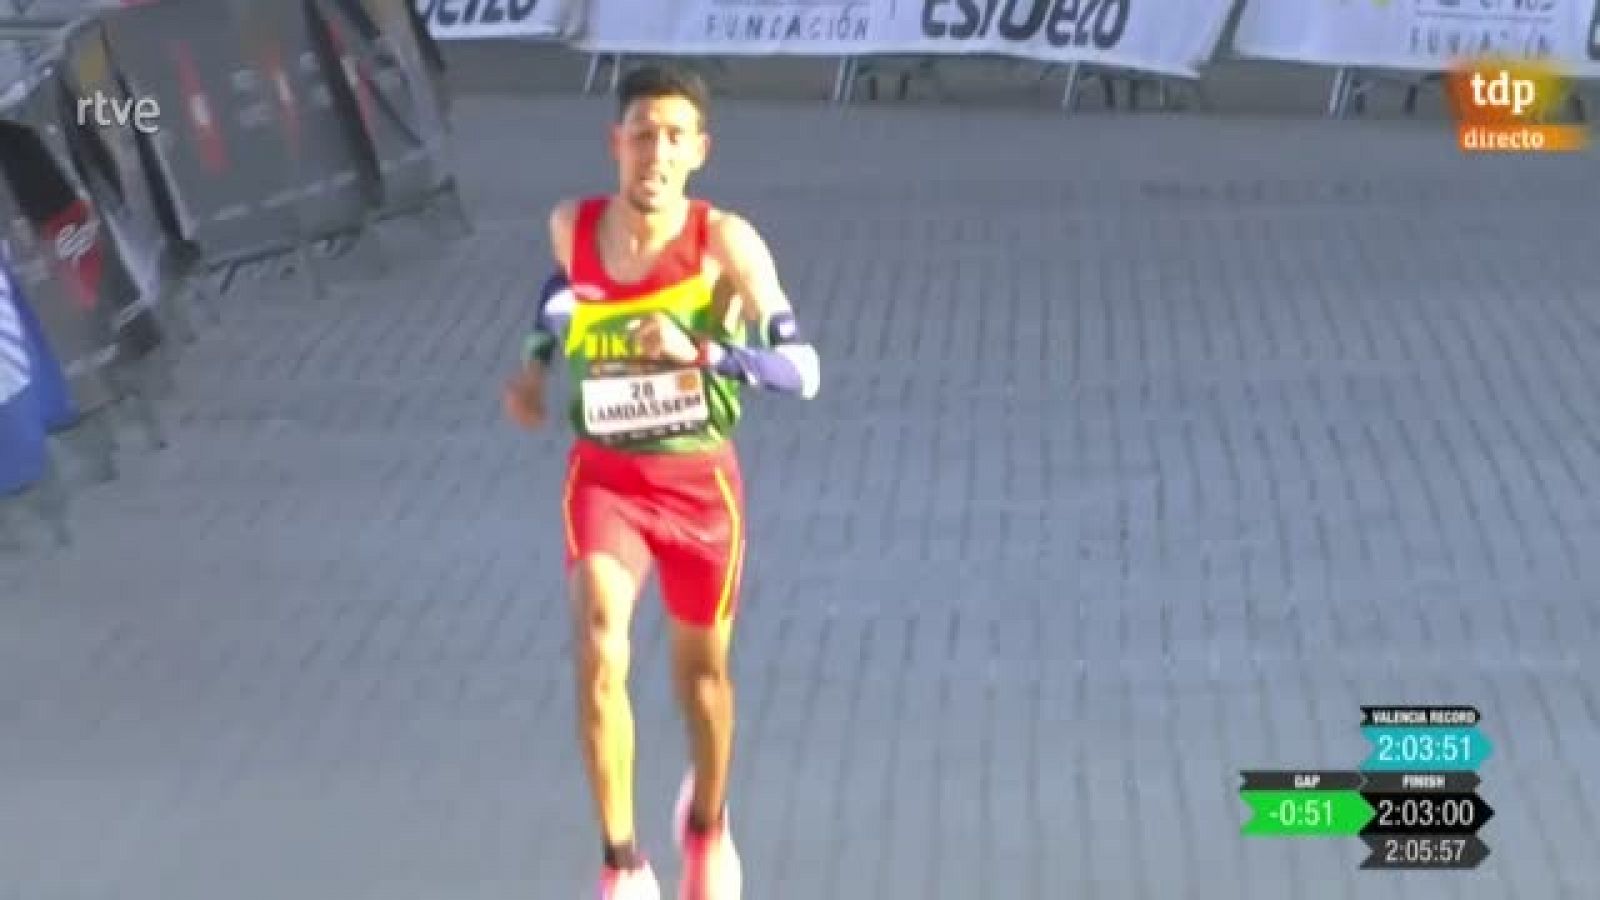 Lamdassem bate el récord de España de maratón